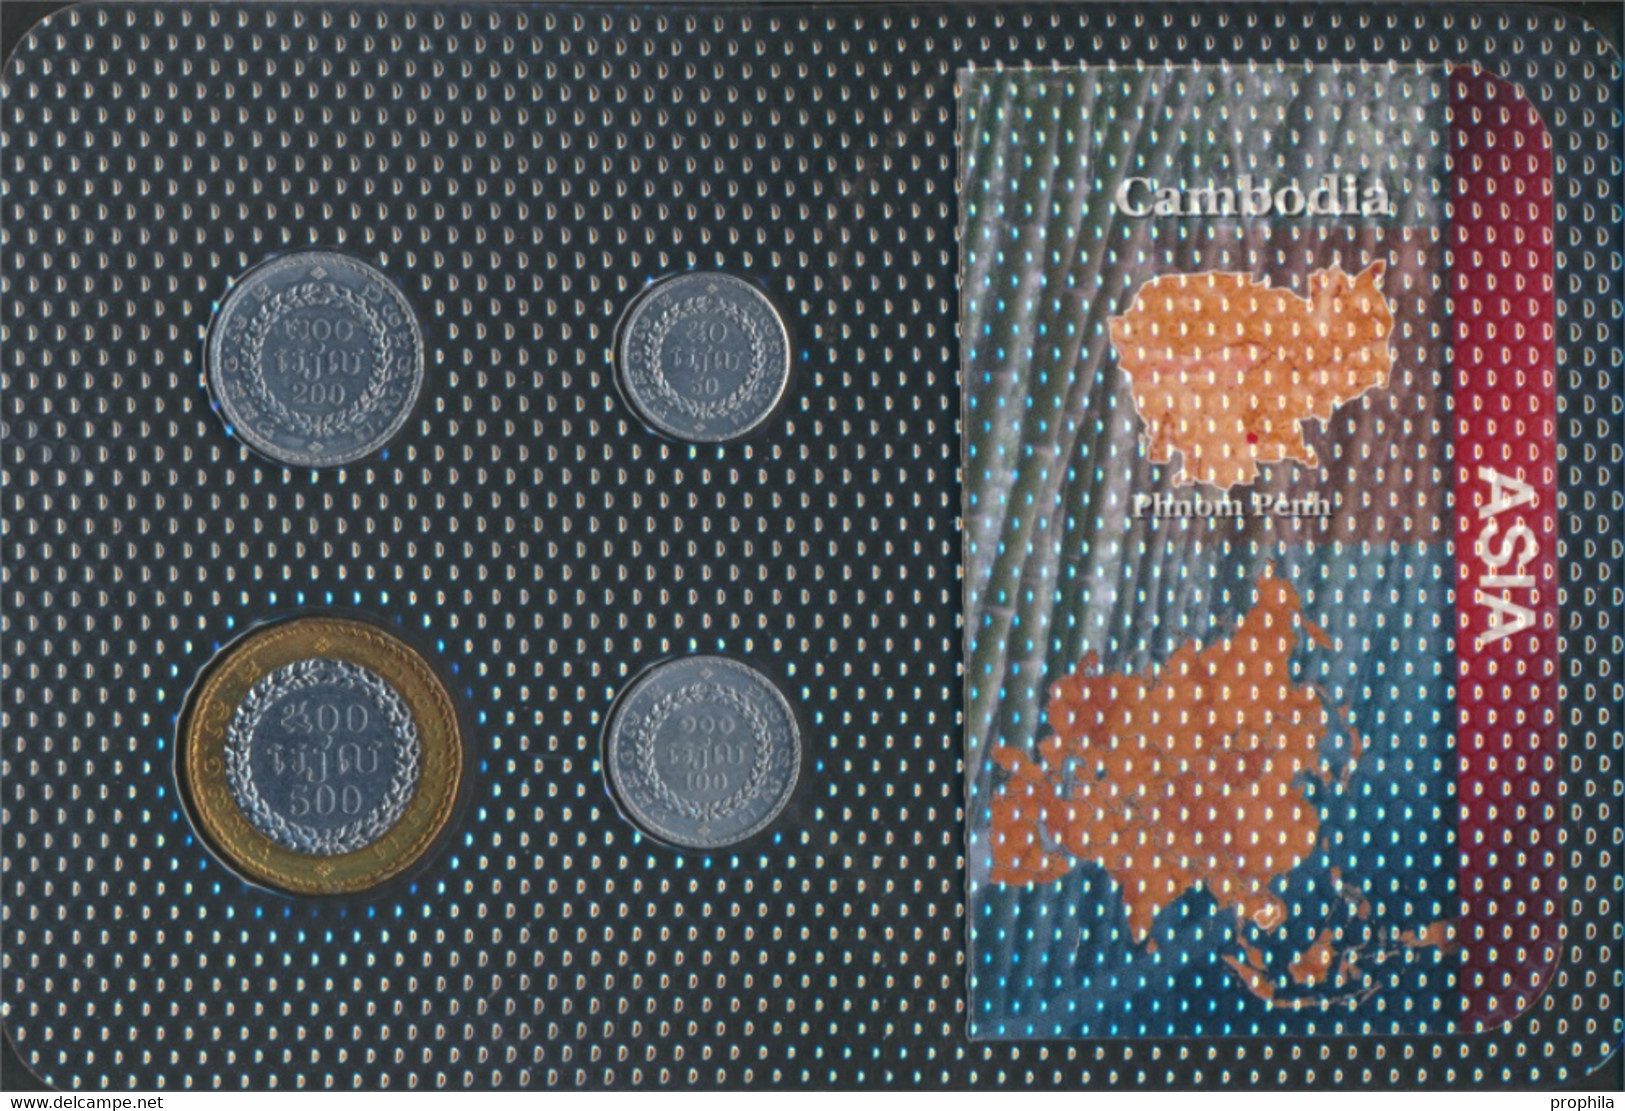 Kambodscha 1994 Stgl./unzirkuliert Kursmünzen 1994 50 Bis 500 Riel (9764267 - Camboya